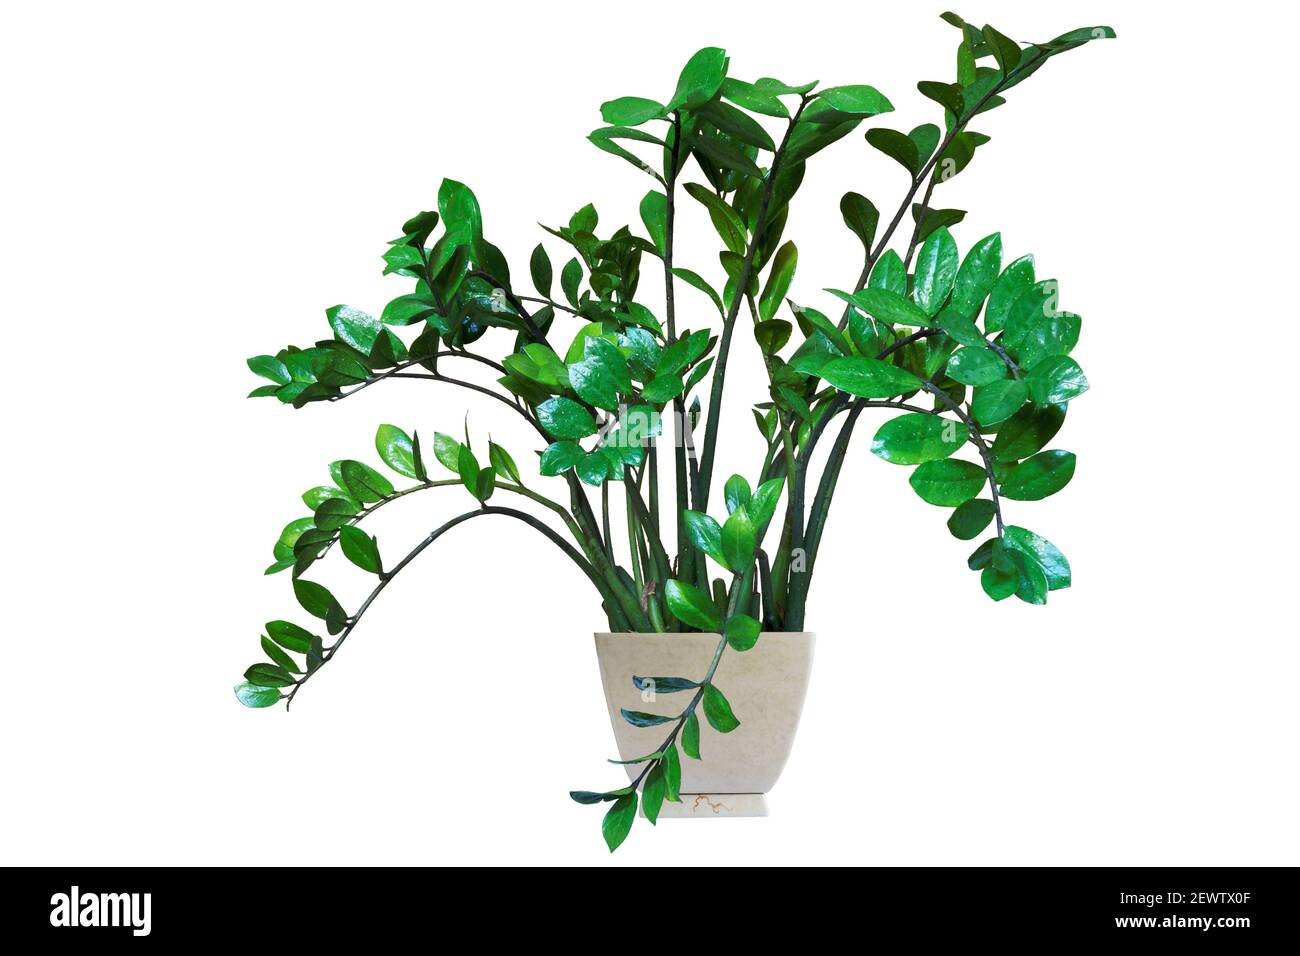 Zamioculcas zamiifolia, Innenanlage in Keramik-Topf für Büro und zu Hause. Isoliert auf weißem Hintergrund Stockfoto